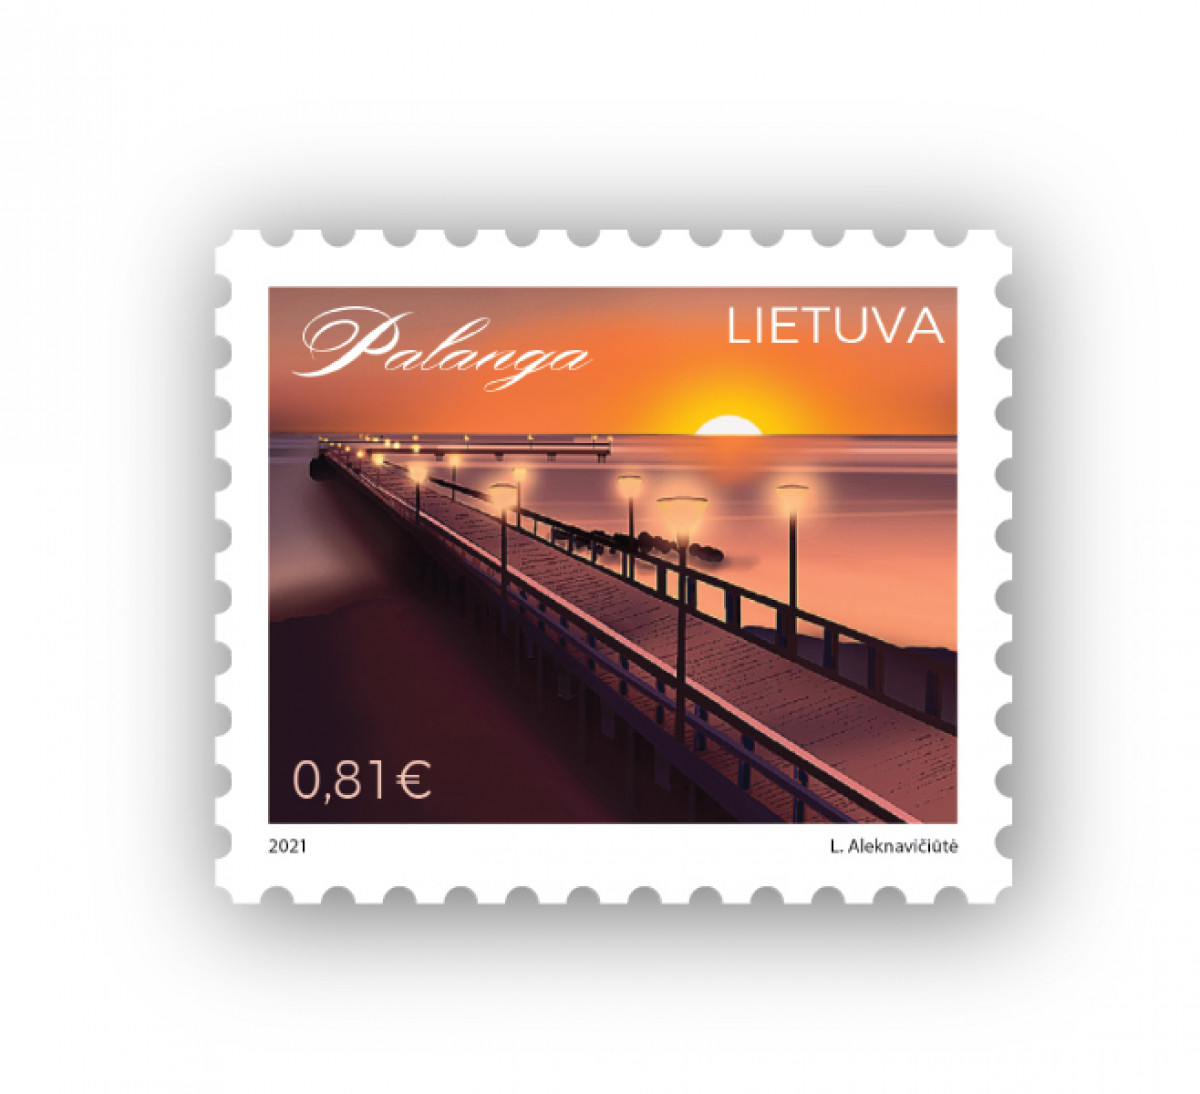 Pašto ženkle įamžintas populiariausio Lietuvos kurorto simbolis – Palangos tiltas